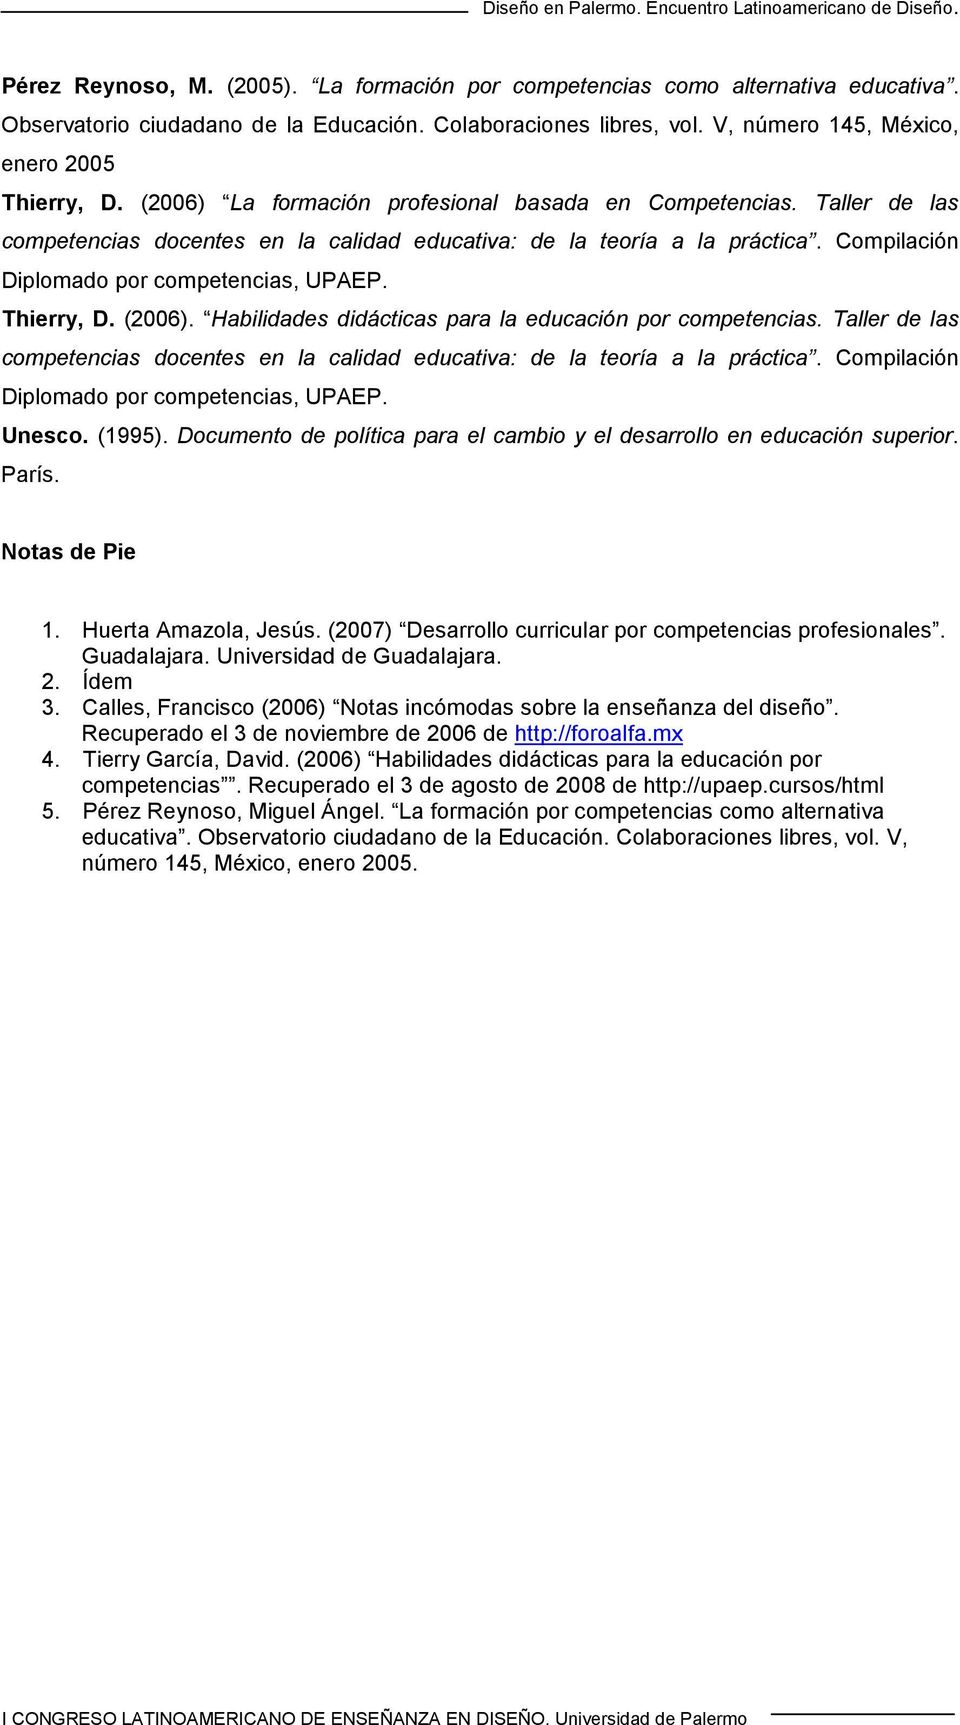 Thierry, D. (2006). Habilidades didácticas para la educación por competencias. Taller de las competencias docentes en la calidad educativa: de la teoría a la práctica.